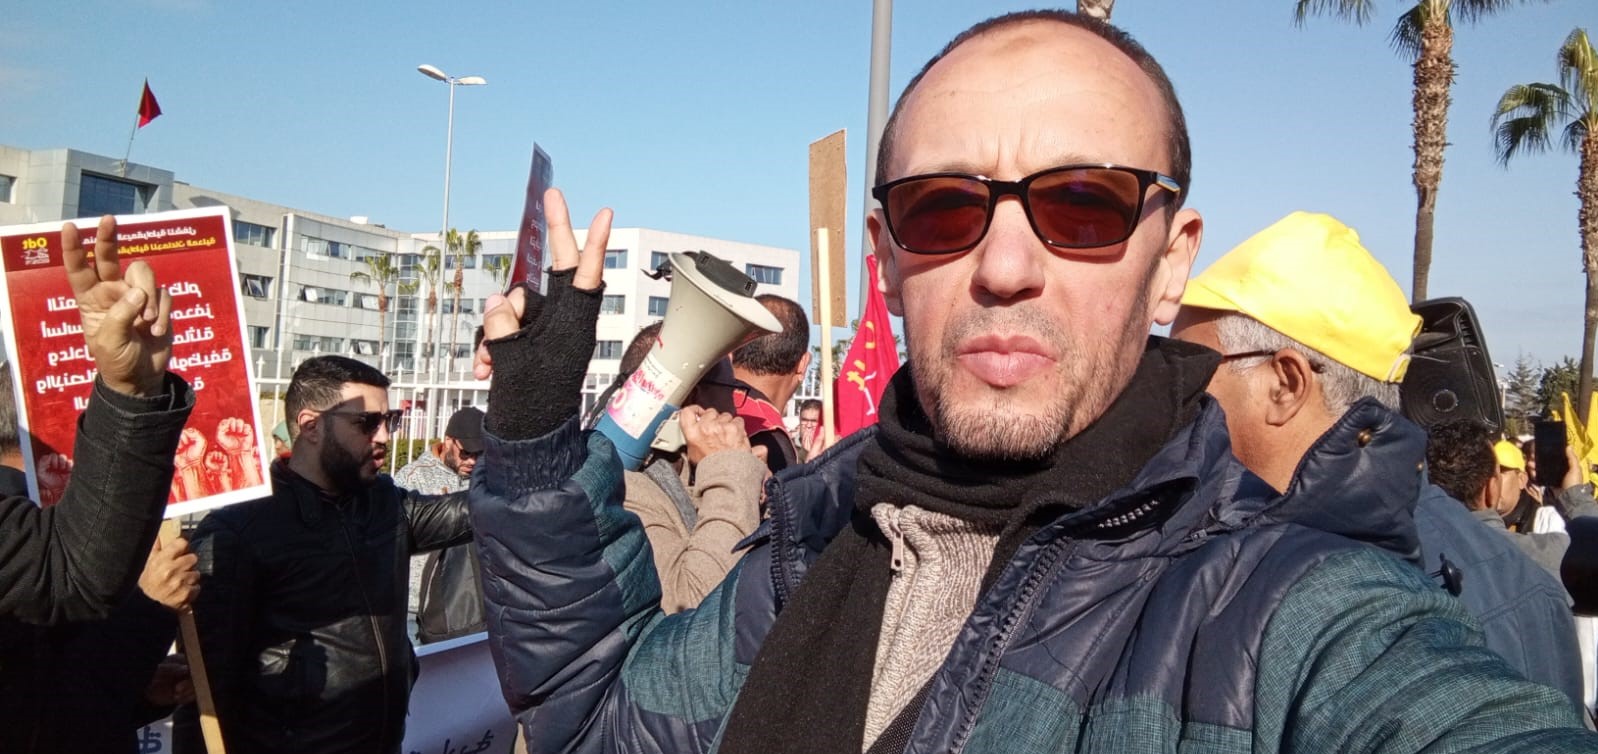 بنصديق: مسيرة 24 أبريل انتفاضة ضد الحكومة بسبب احتقارها لقطاع الجماعات الترابية